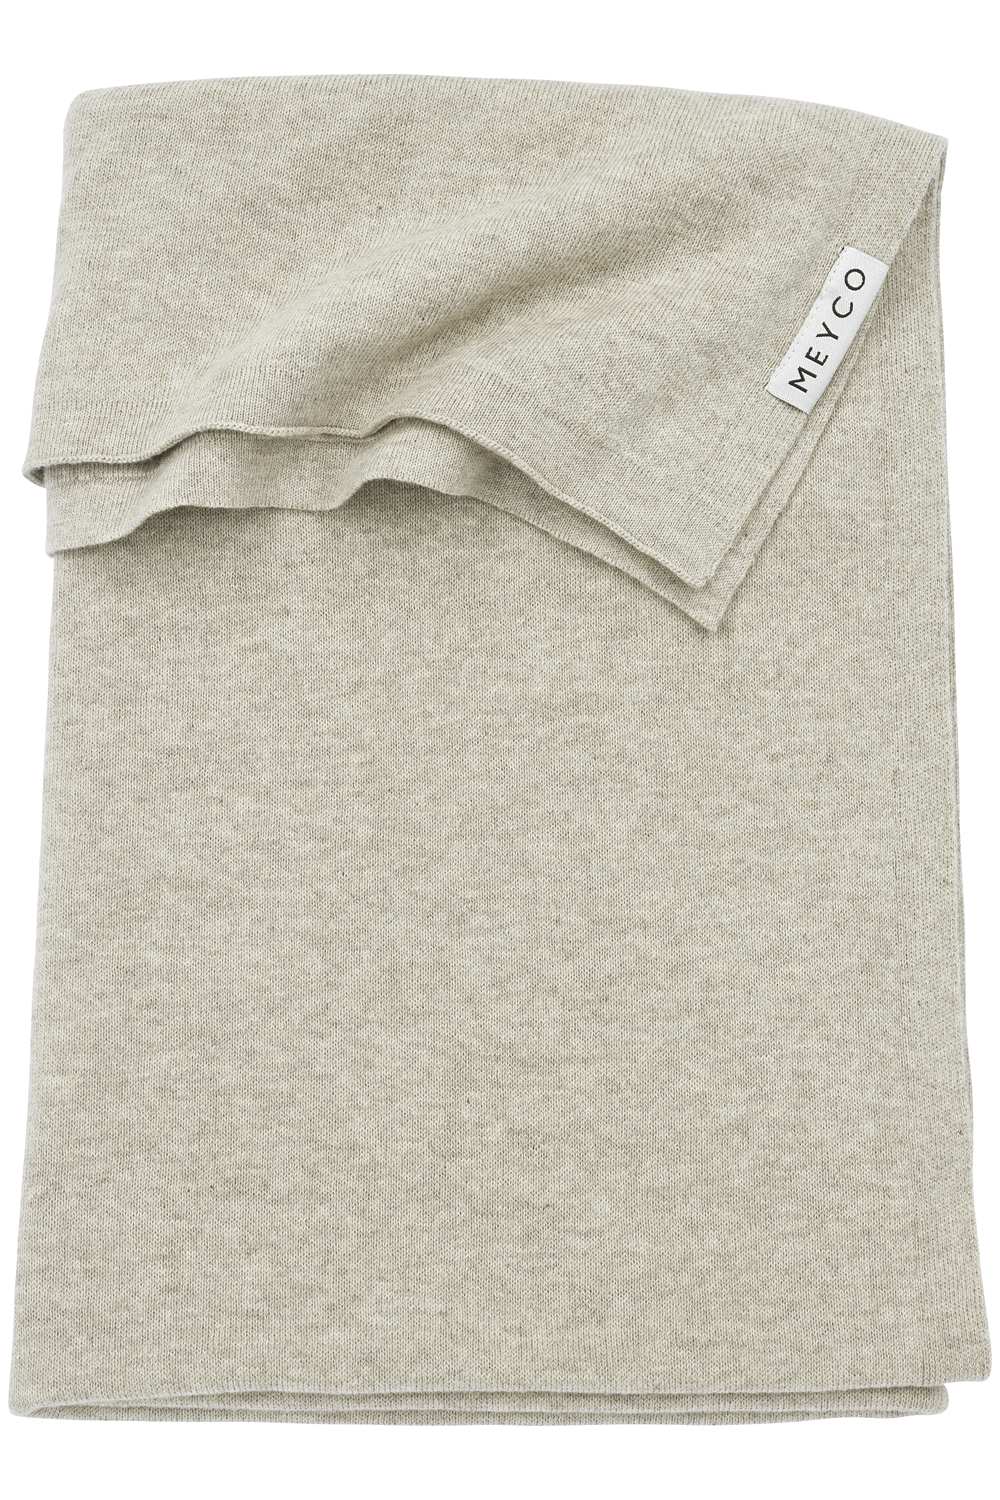 Ledikantdeken Knit Basic - Sand Melange - 100x150cm